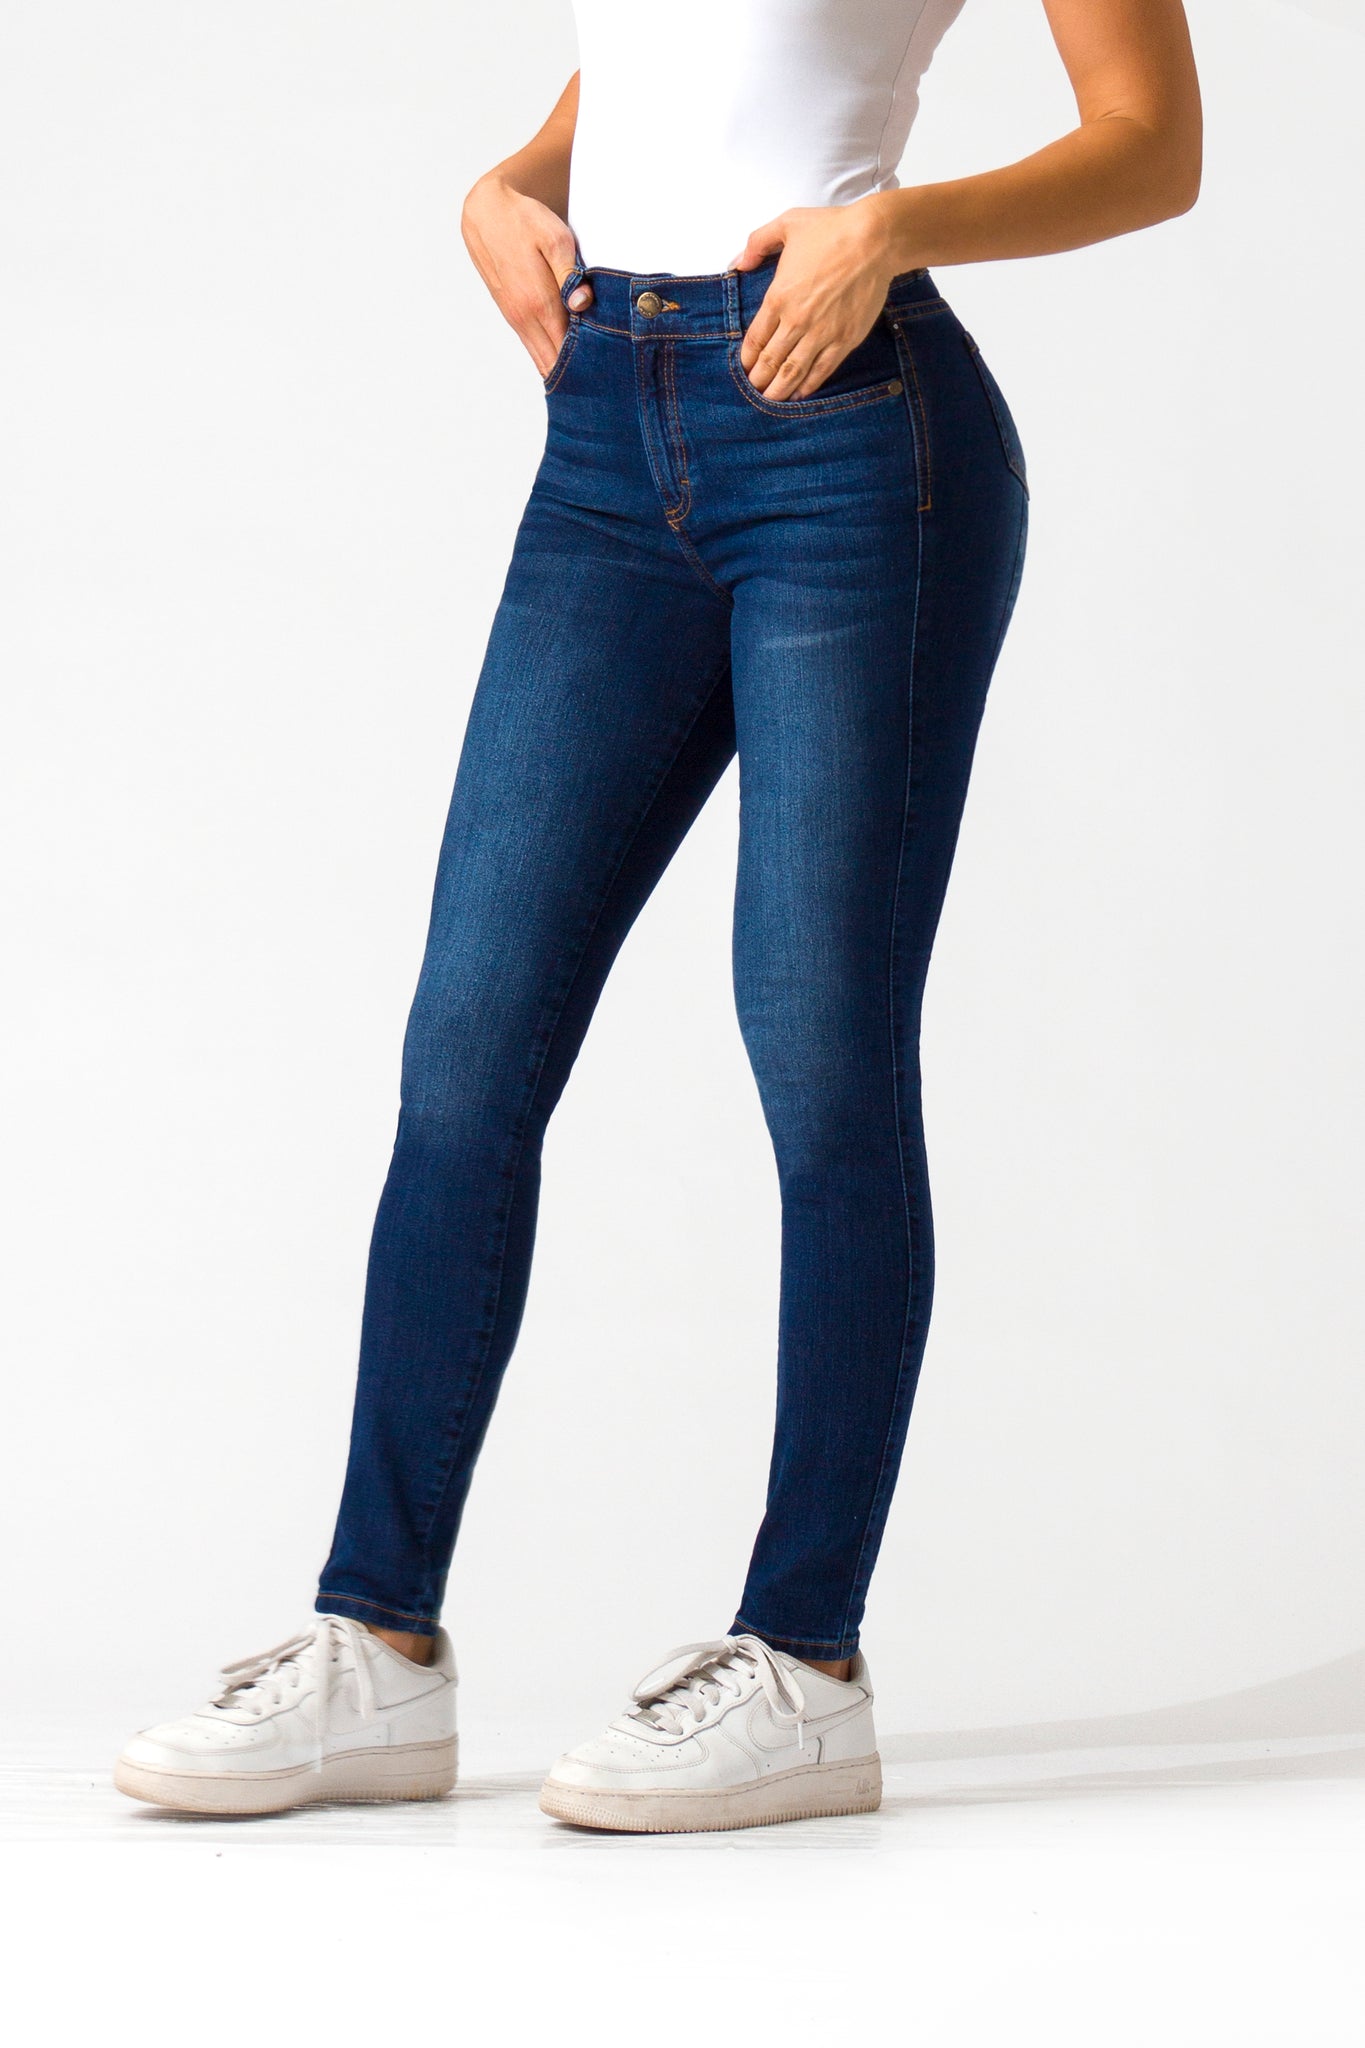 OHPOMP!® Basics, Cintura Alta Skinny Jeans Azul Oscuro OP1005